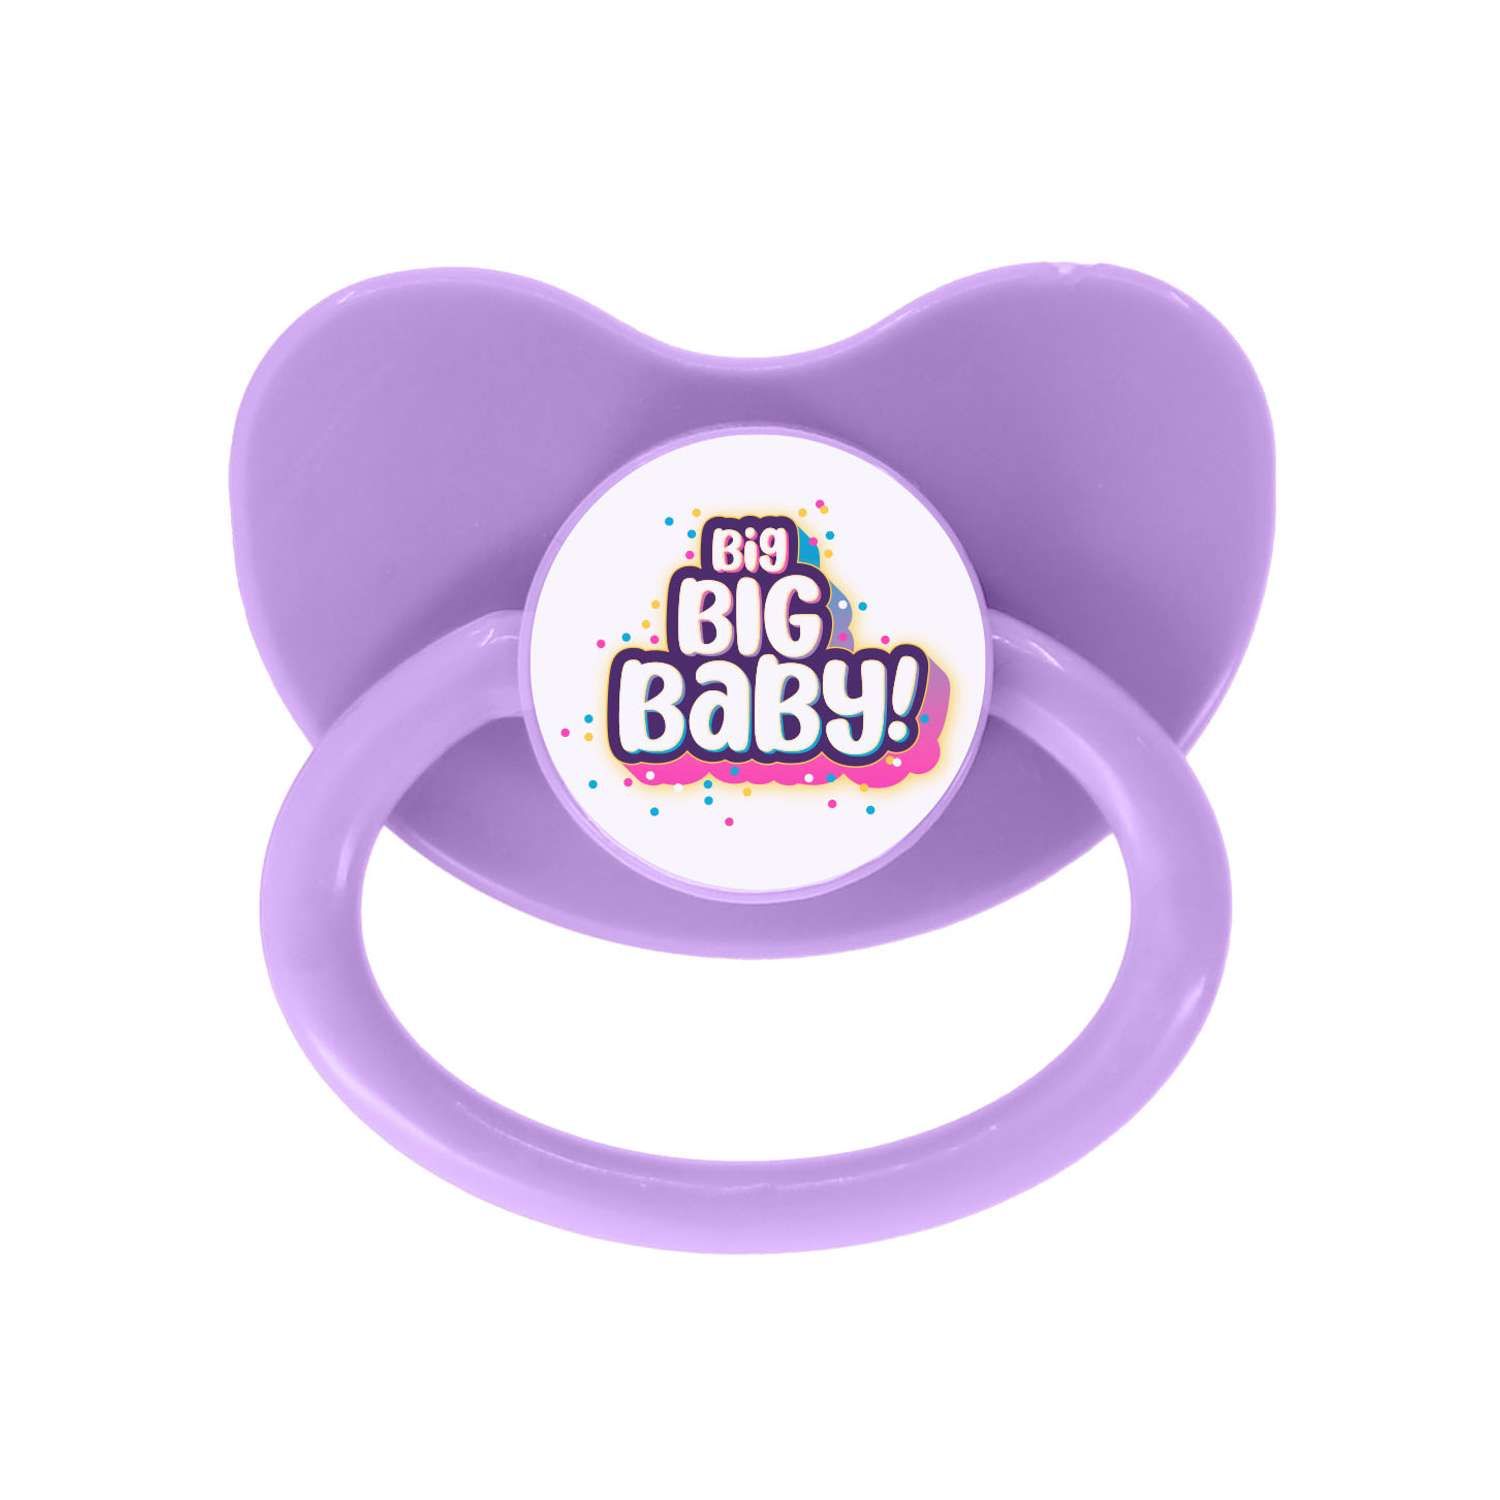 Игрушка сюрприз BIG BIG BABY Мягконабивная интерактивная кукла в шаре с аксессуарами - фото 27